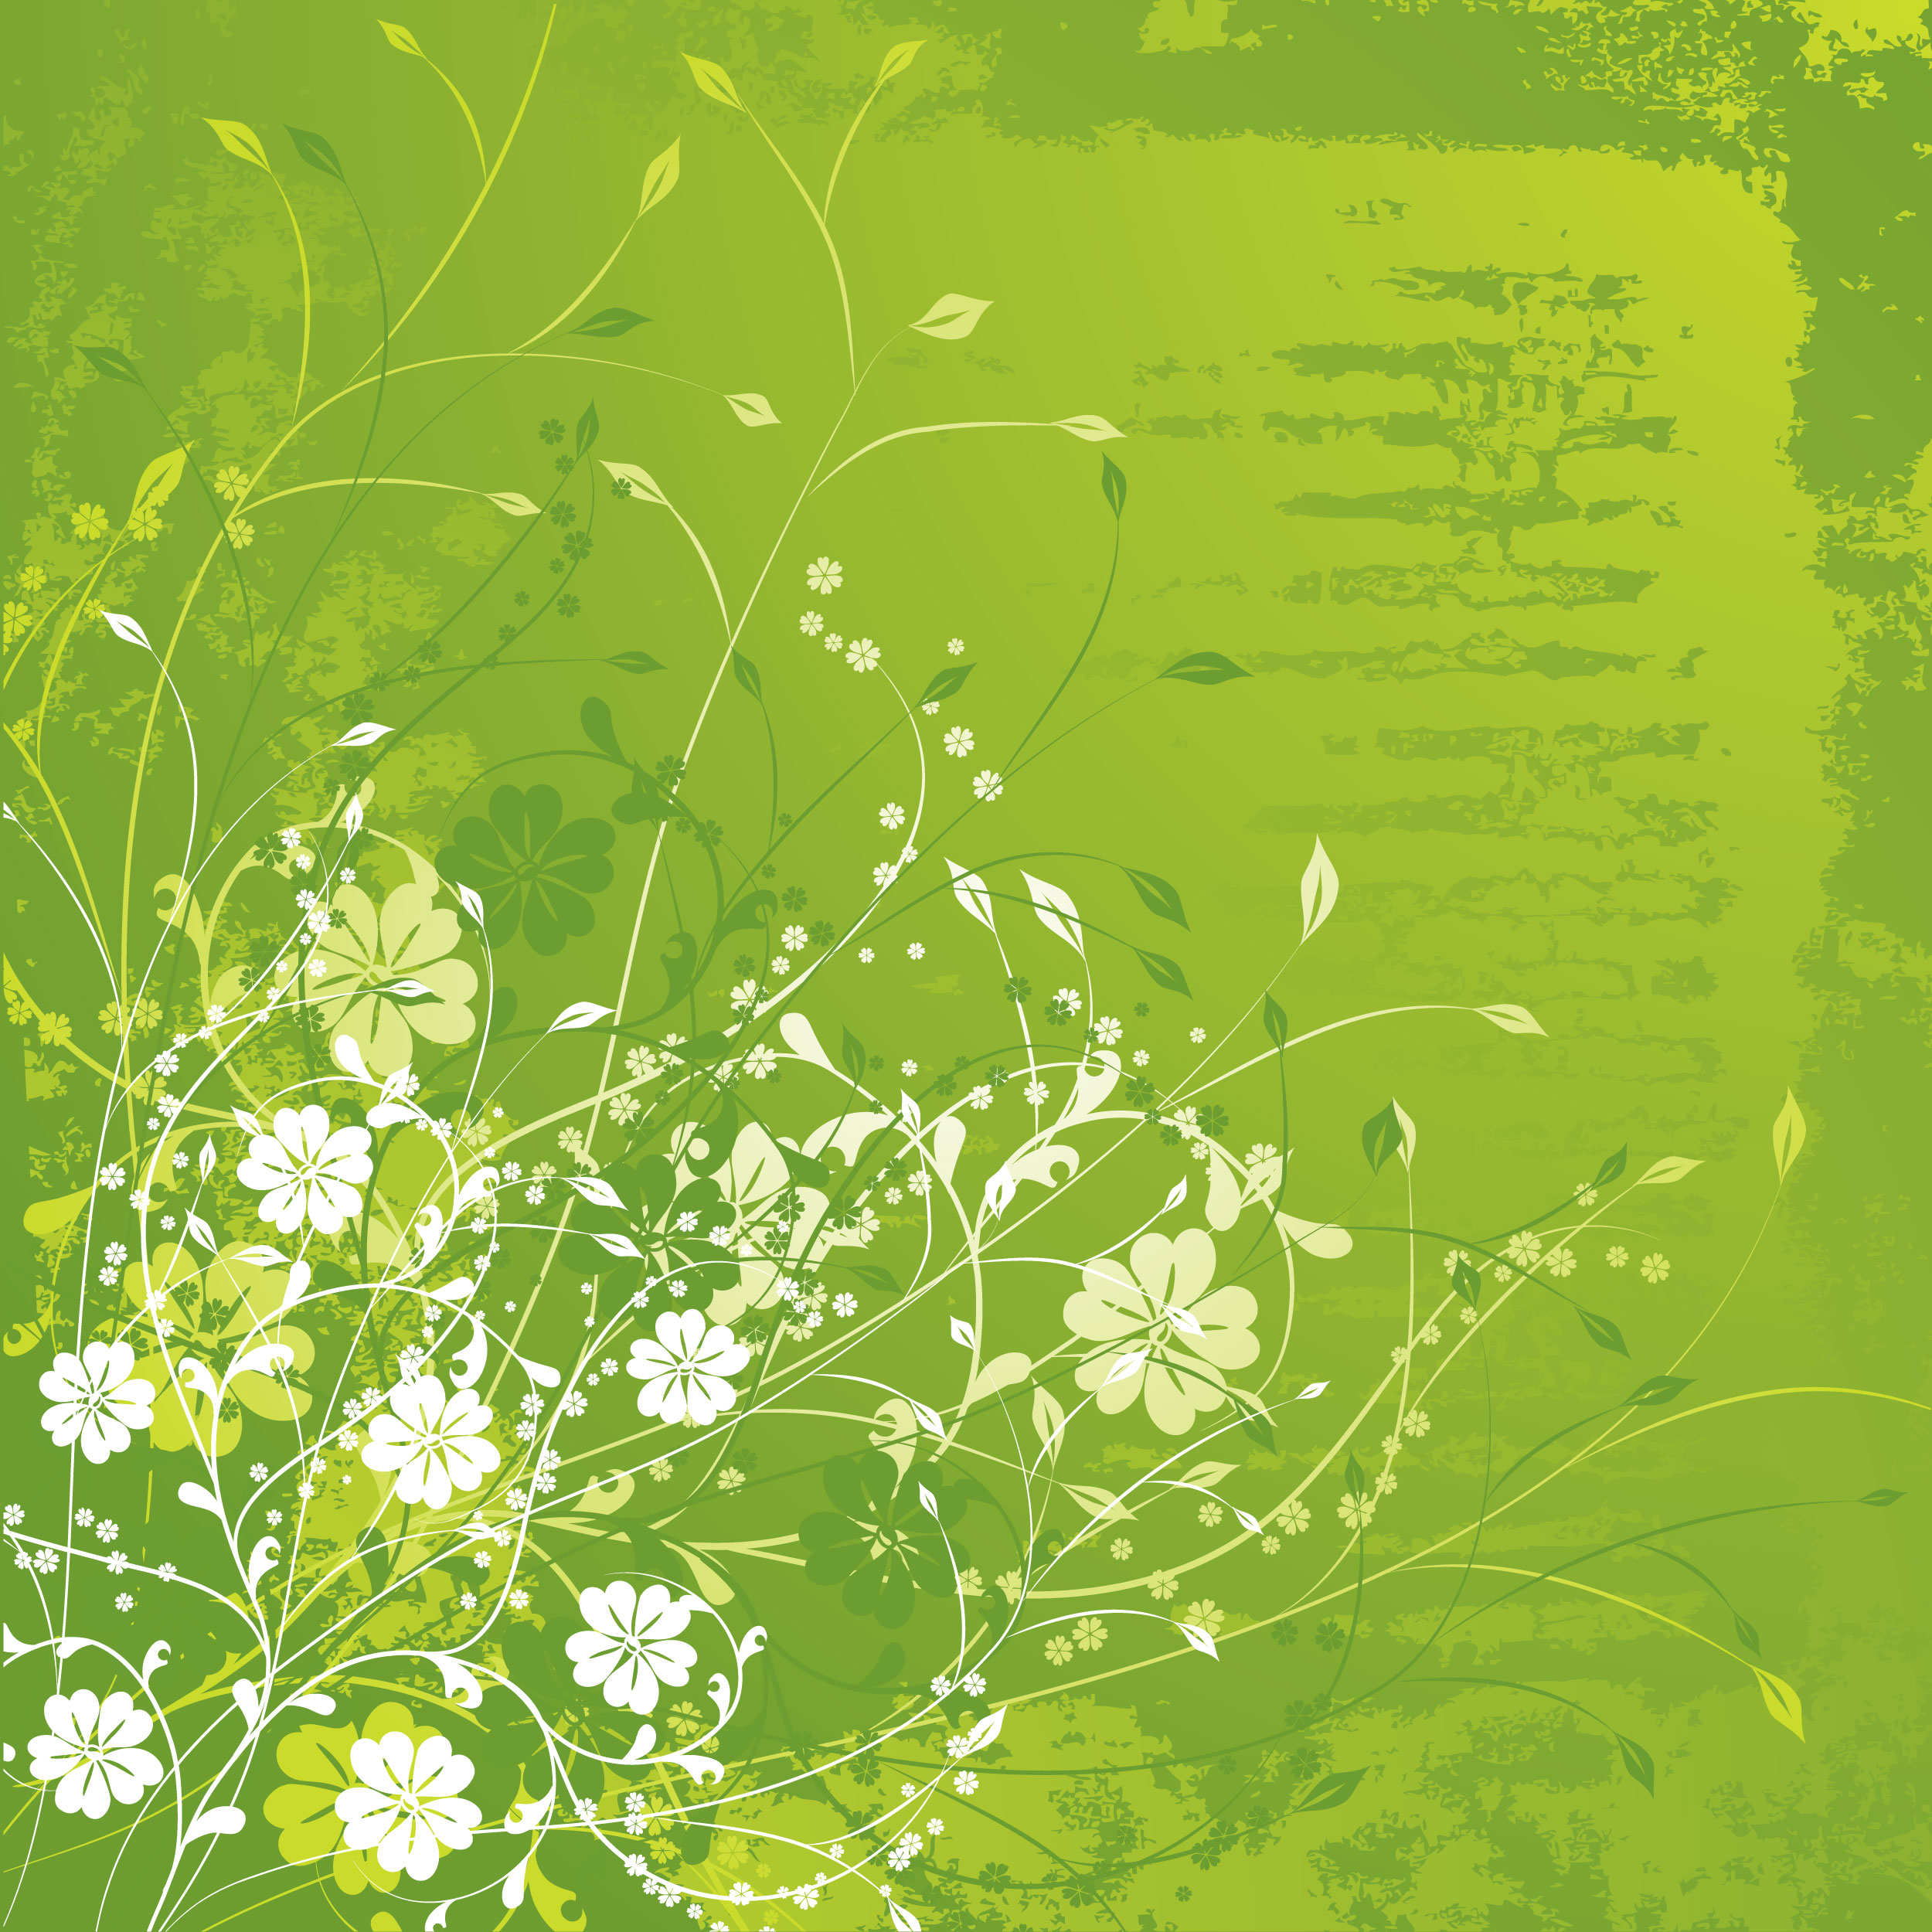 緑色の花のイラスト フリー素材 背景 壁紙no 188 緑 白抜き 茎葉